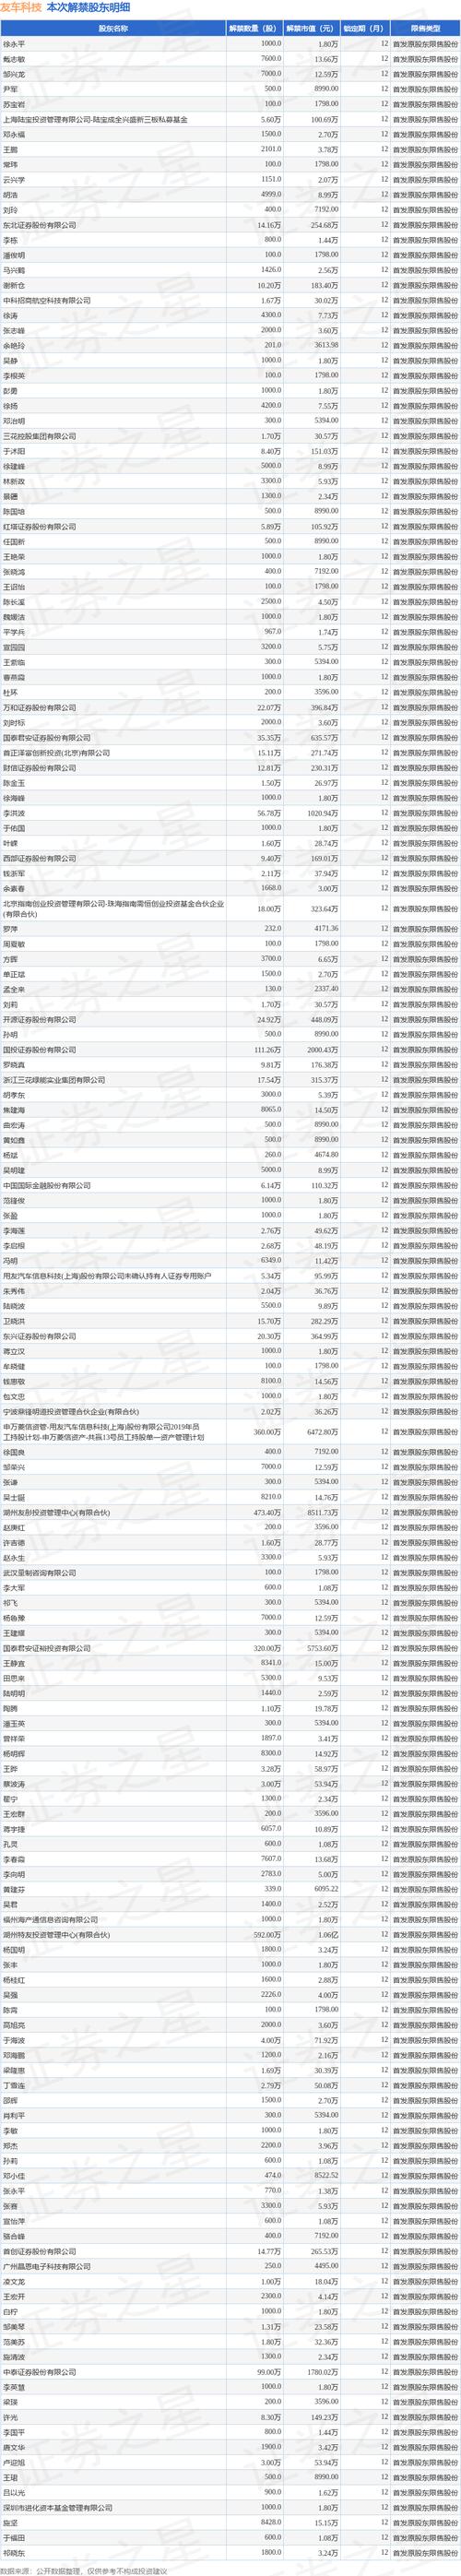 江南奕帆(301023.SZ)579万股限售股于7月8日可上市流通